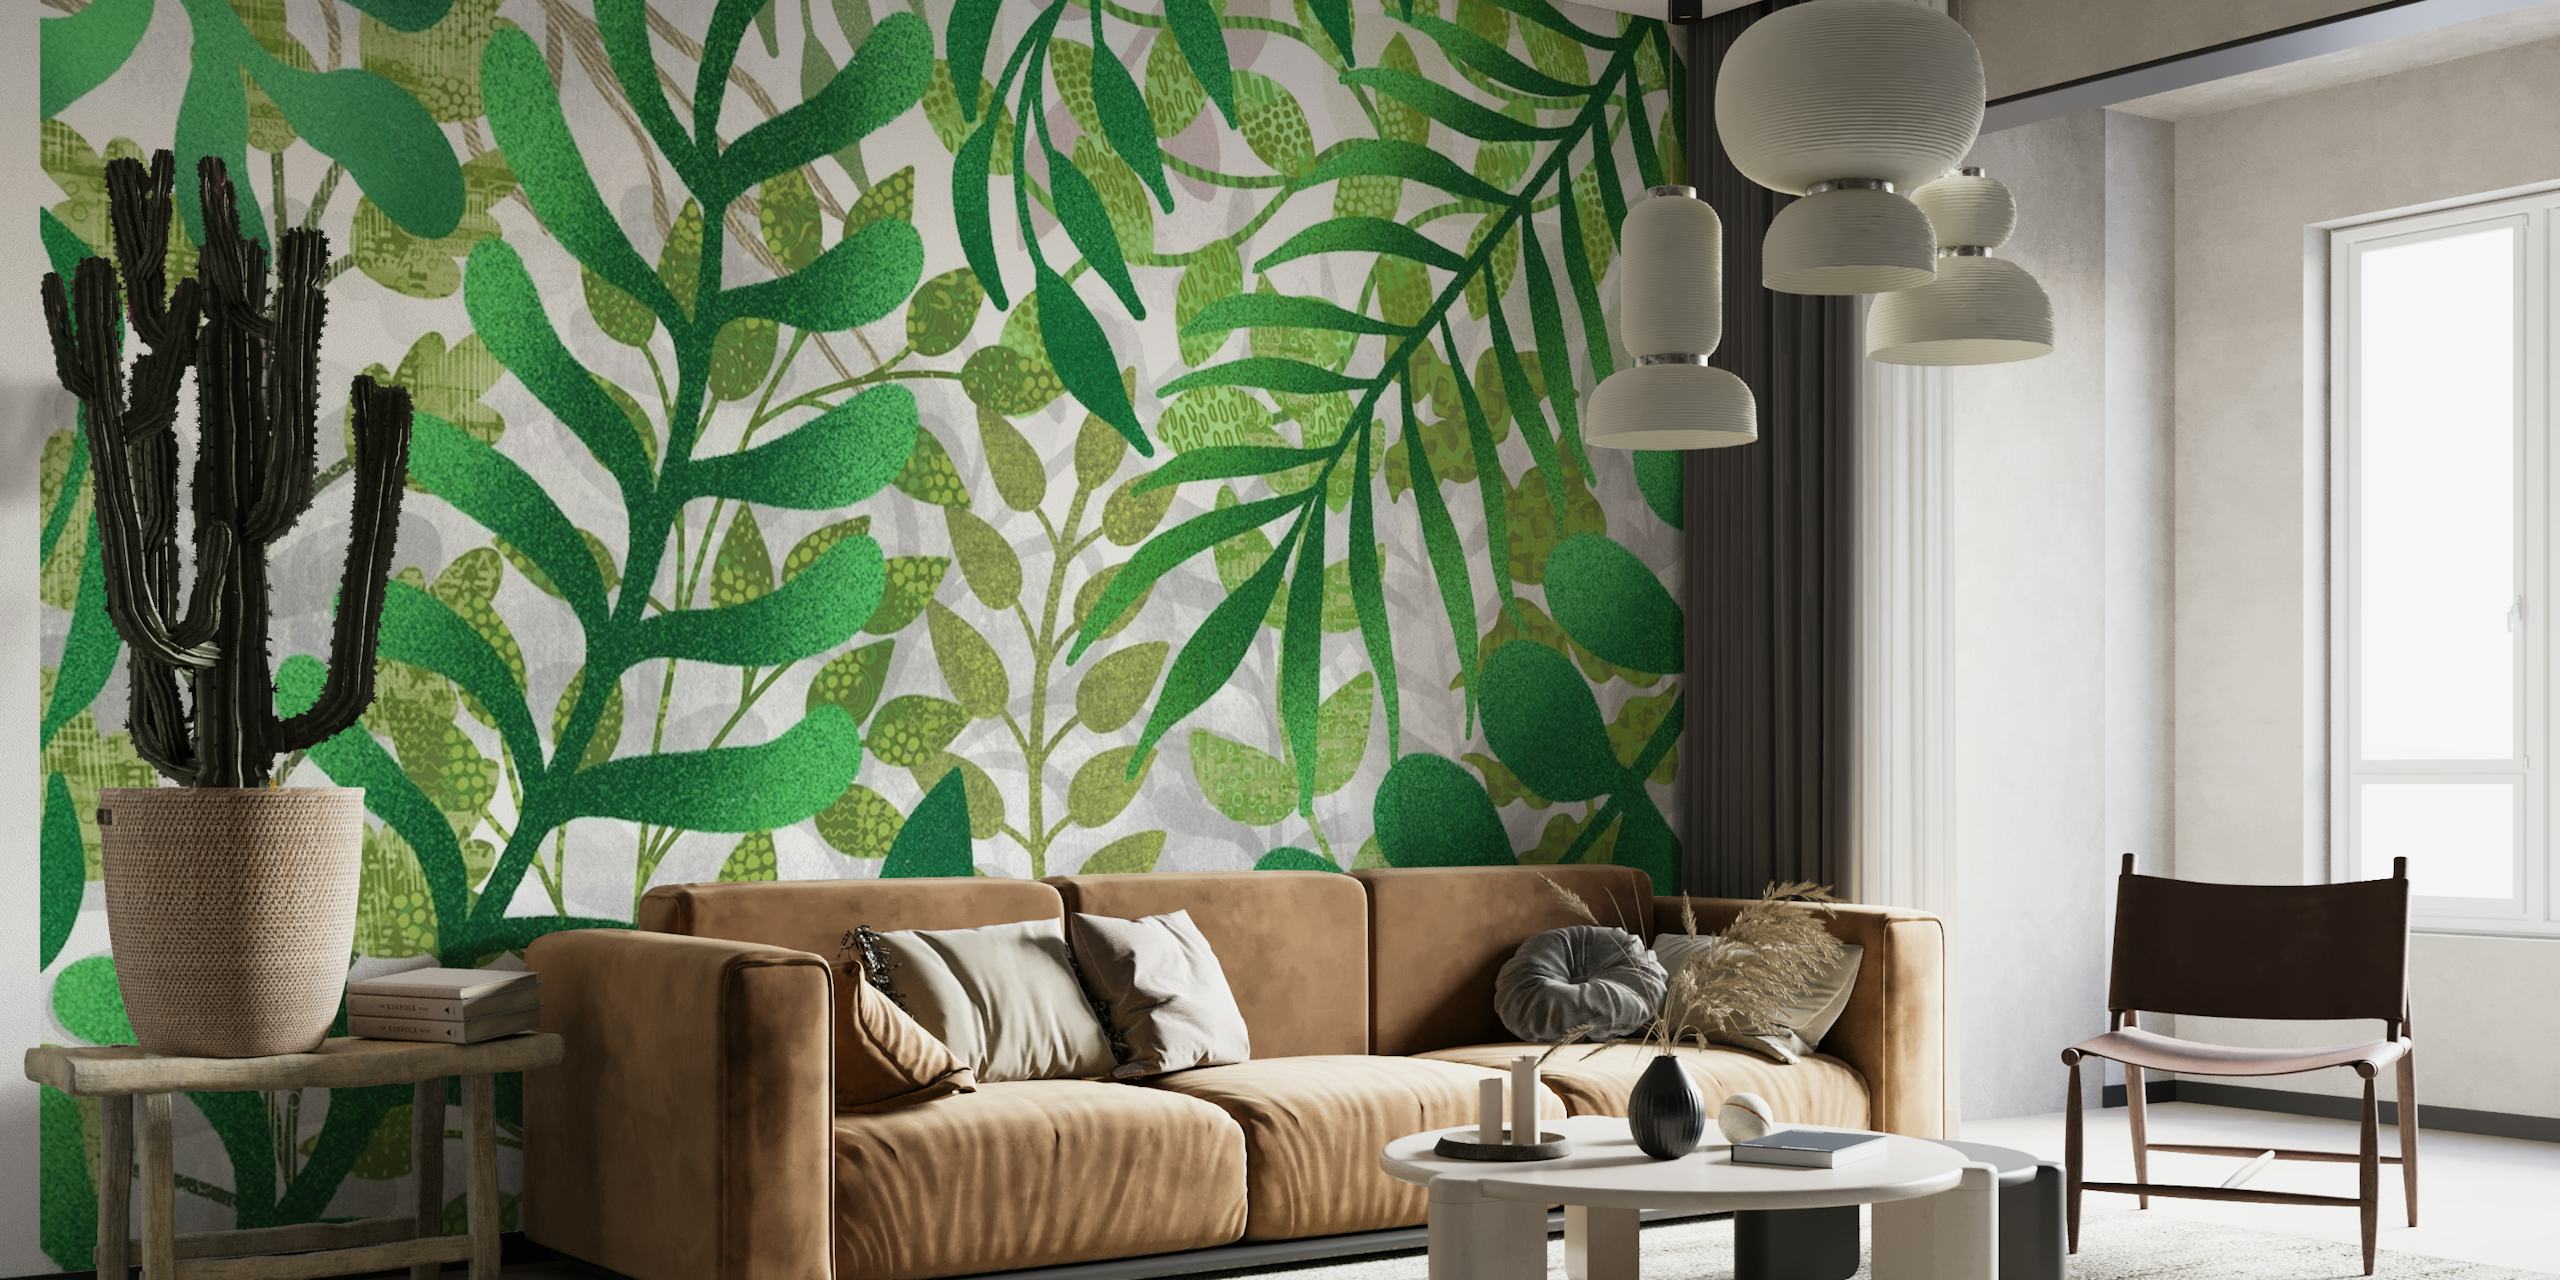 Zidni mural s bujnim zelenim lišćem za uređenje doma